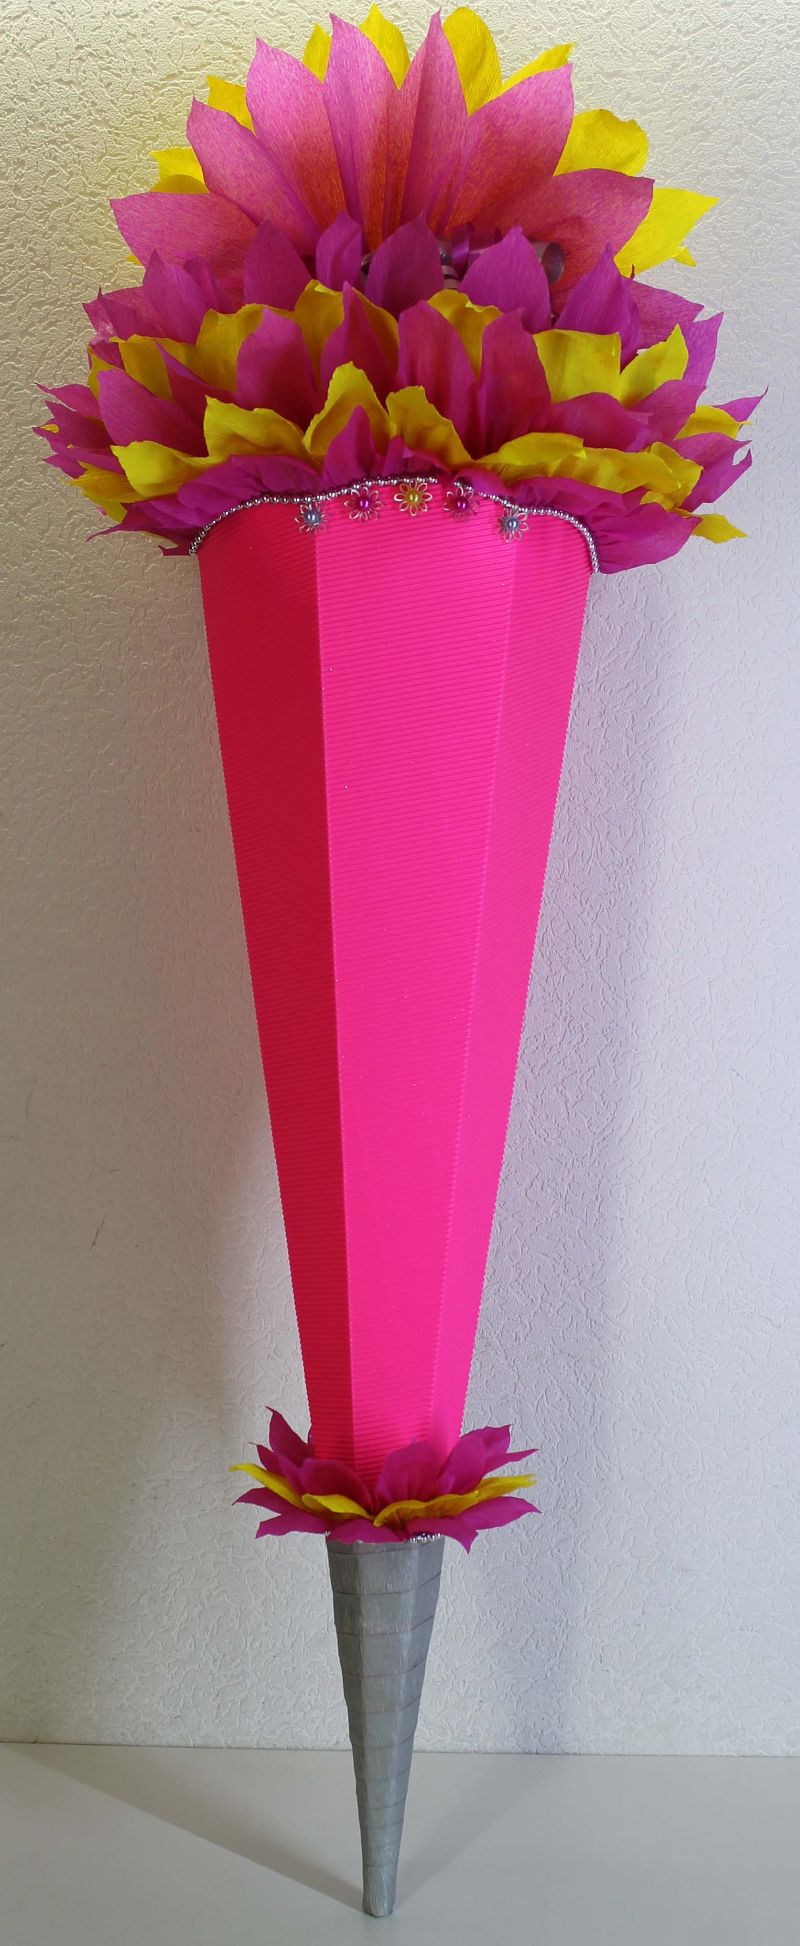 Schultüte Zuckertüte Rohling zum selbst verzieren Rohling 70 75 80 85 90  100 cm / 1m für Mädchen HANDARBEIT leuchtpink gelb pink silber